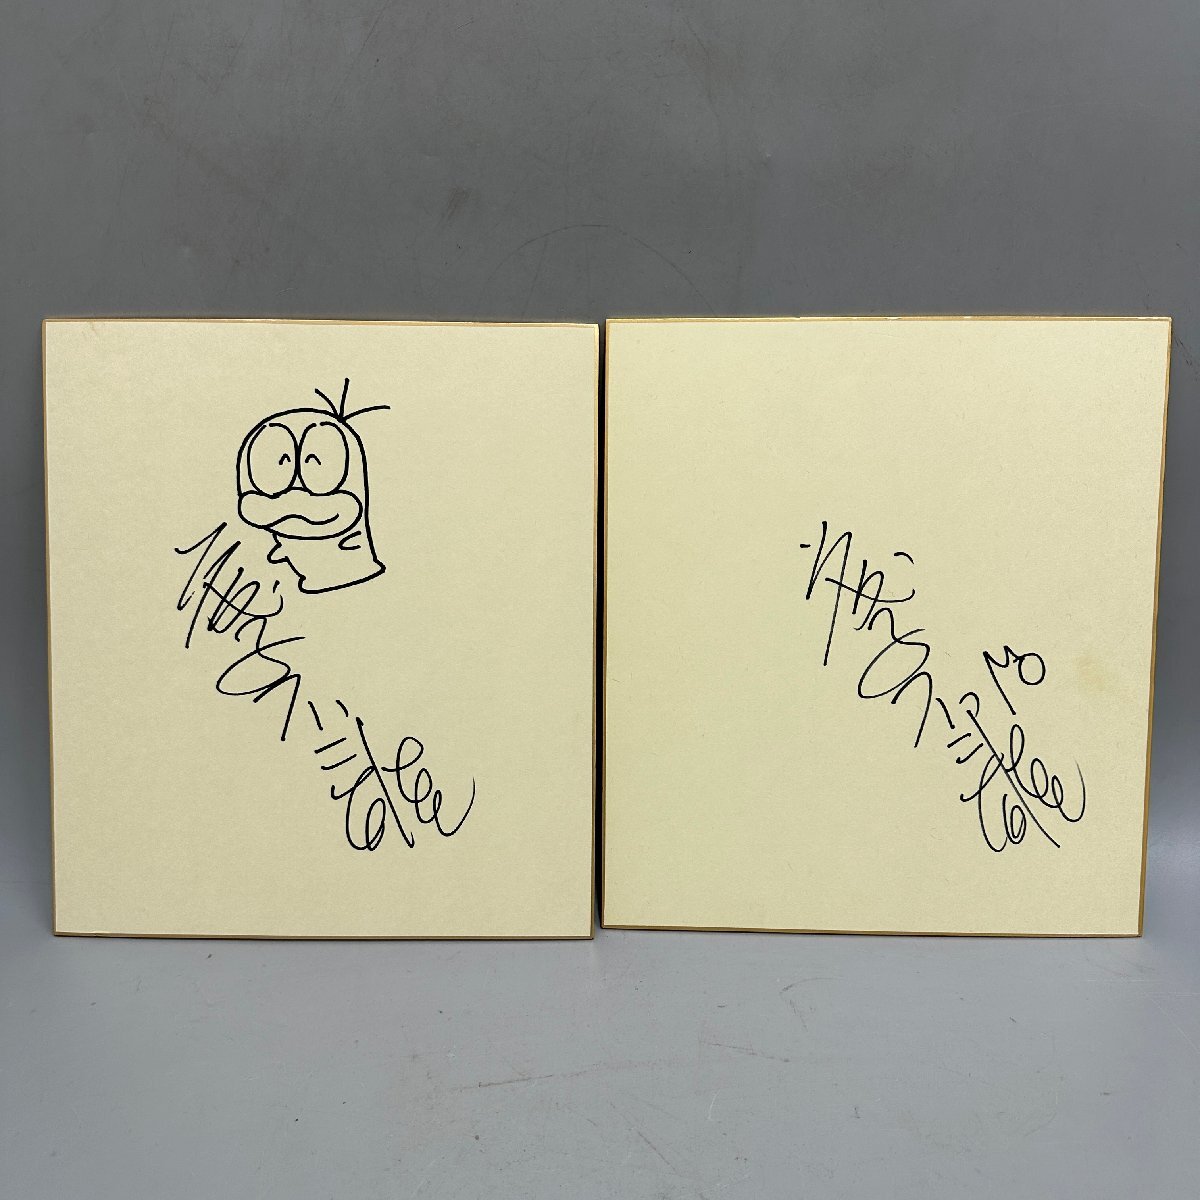 ●○[4] Фудзико Фудзио автограф на цветной бумаге автограф 2 очка Ghost Q Taro 06/040204s○●, комиксы, аниме товары, знак, Ручная роспись